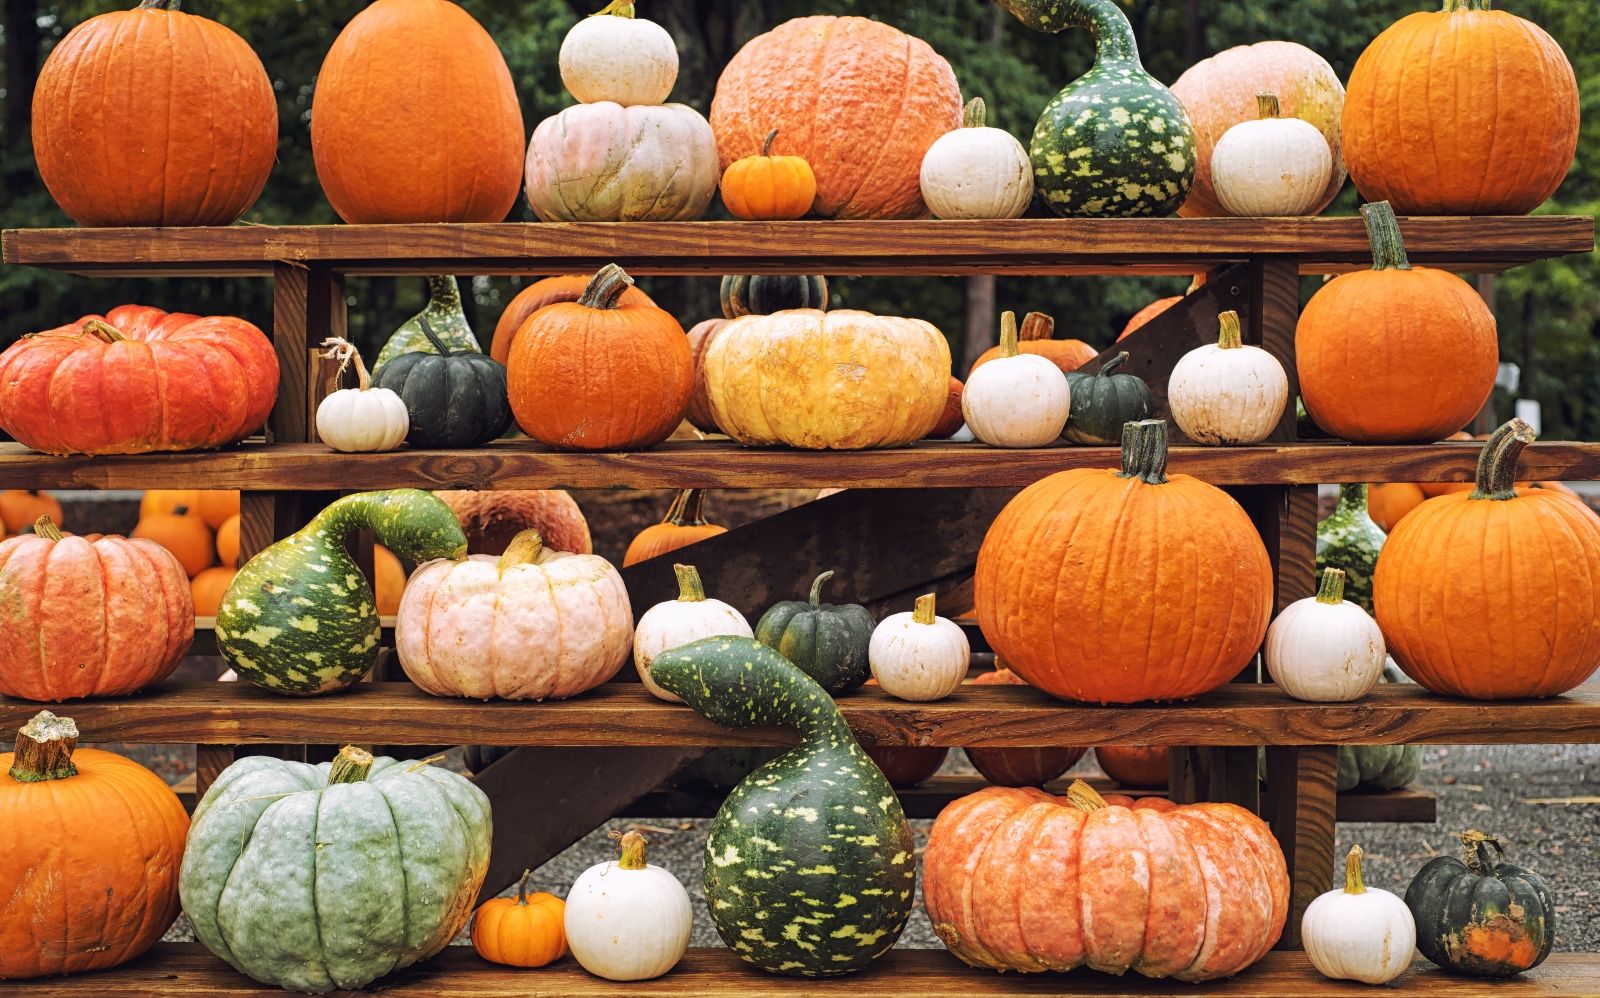 Pumpkins and gourds on wooden shelves - Pumpkin